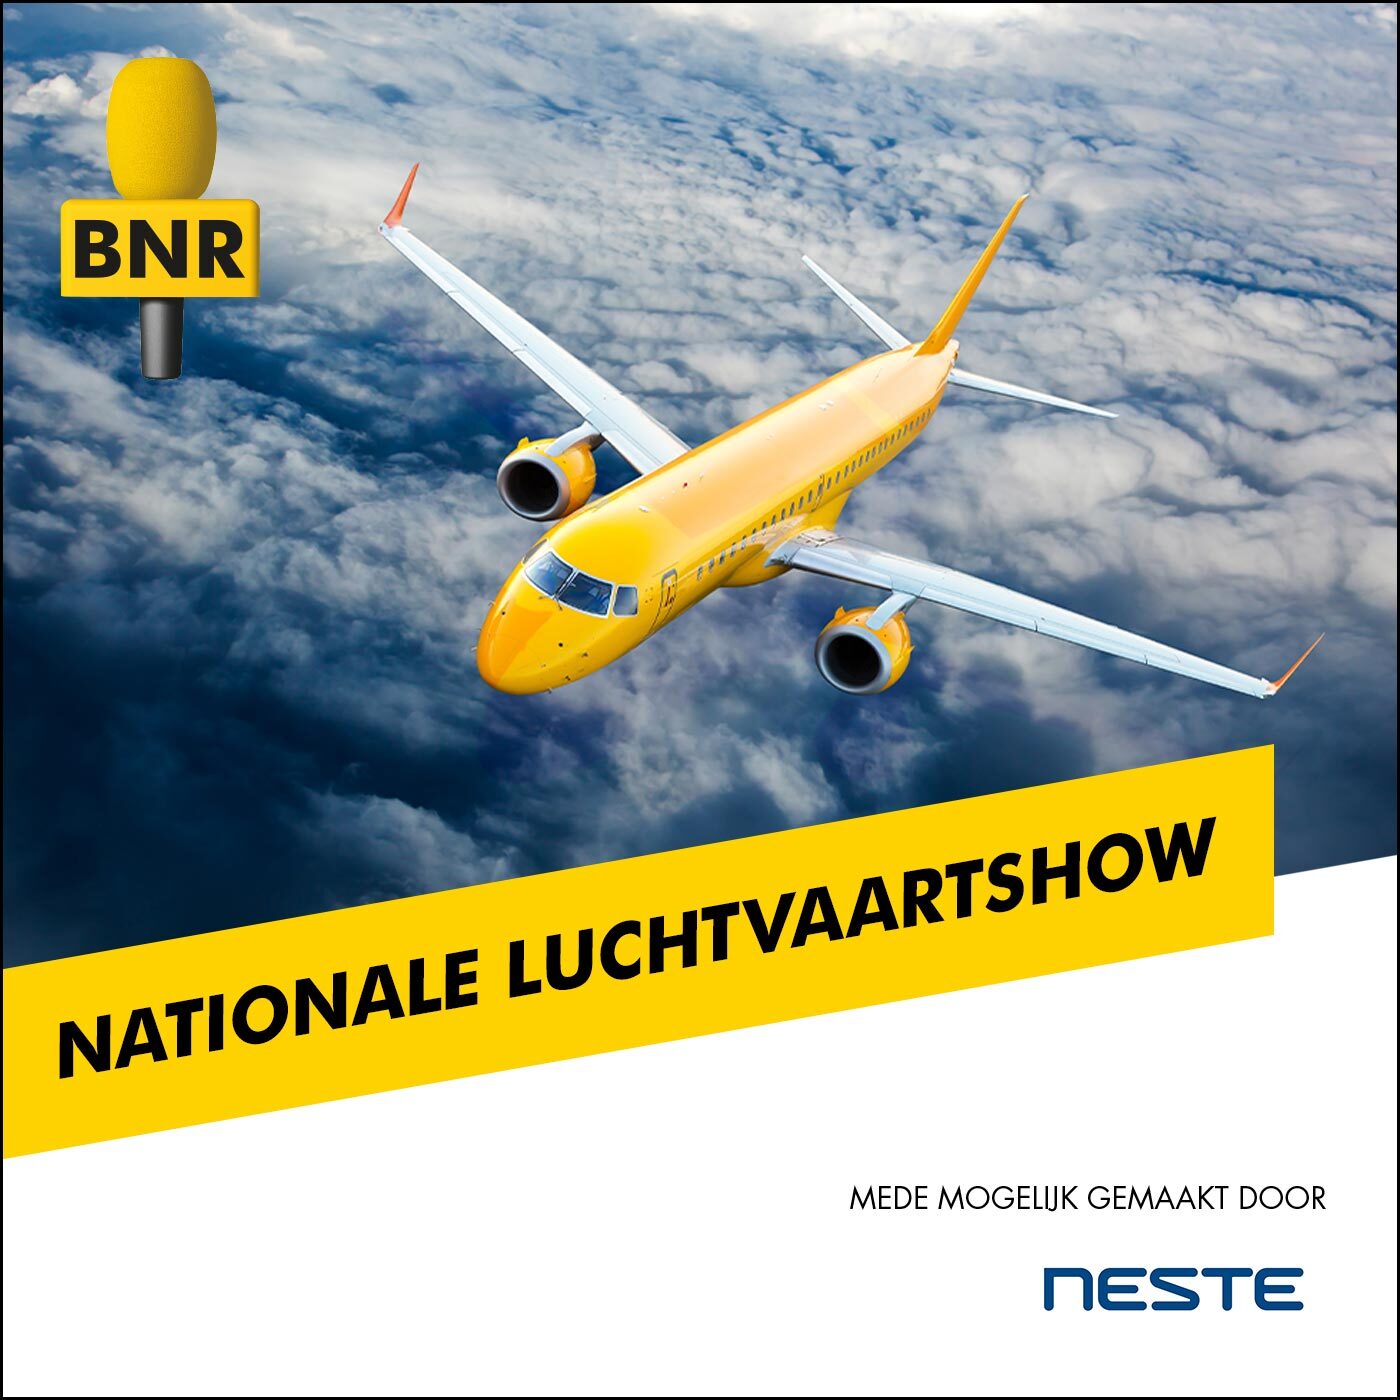 De Nationale Luchtvaartshow